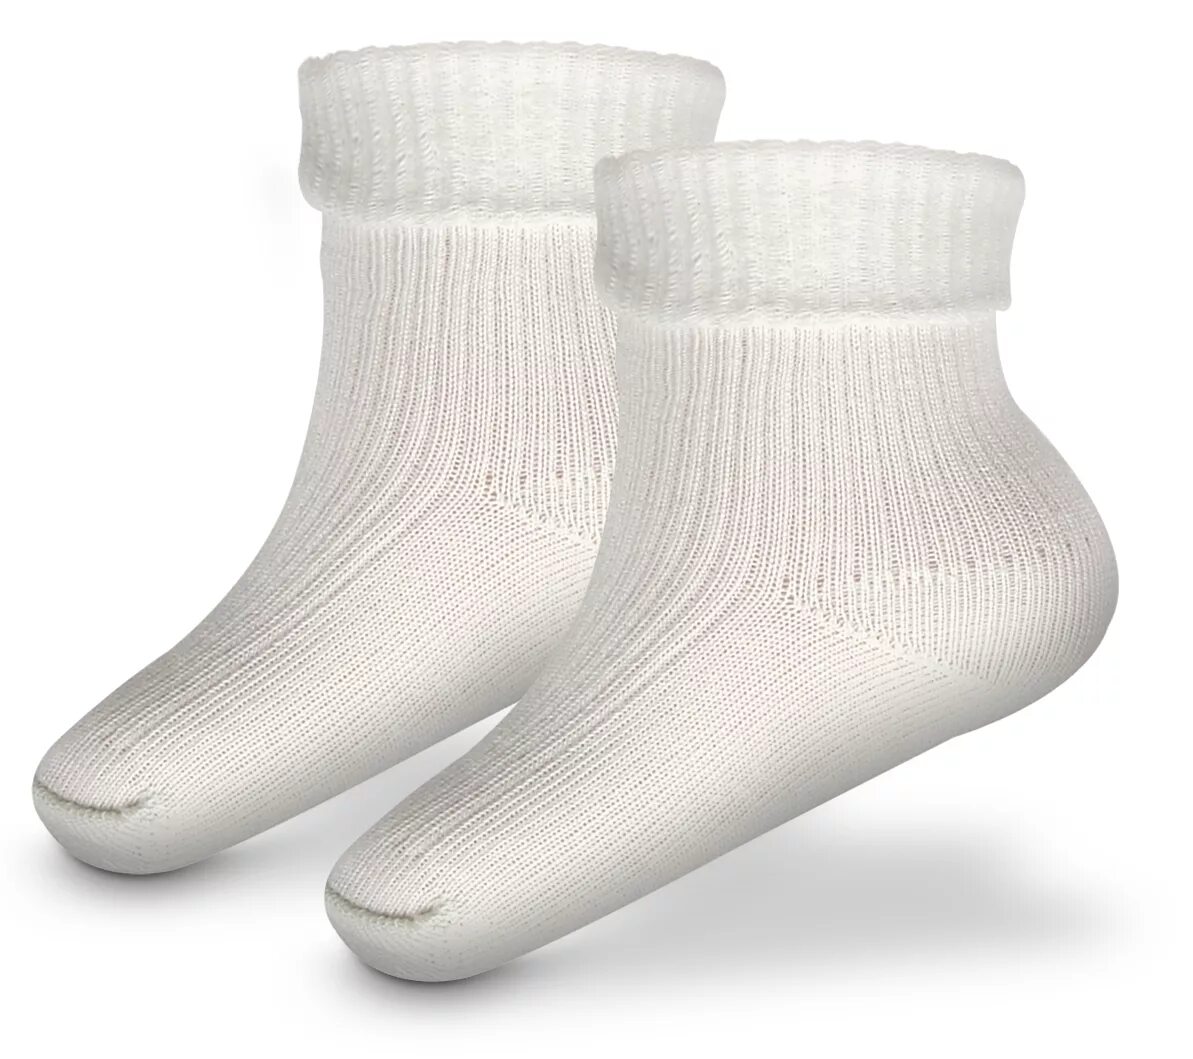 Хлопчатобумажные носки. Носки из хлопка. Белые носки. Тонкие хлопчатобумажные носки. Носки хб купить